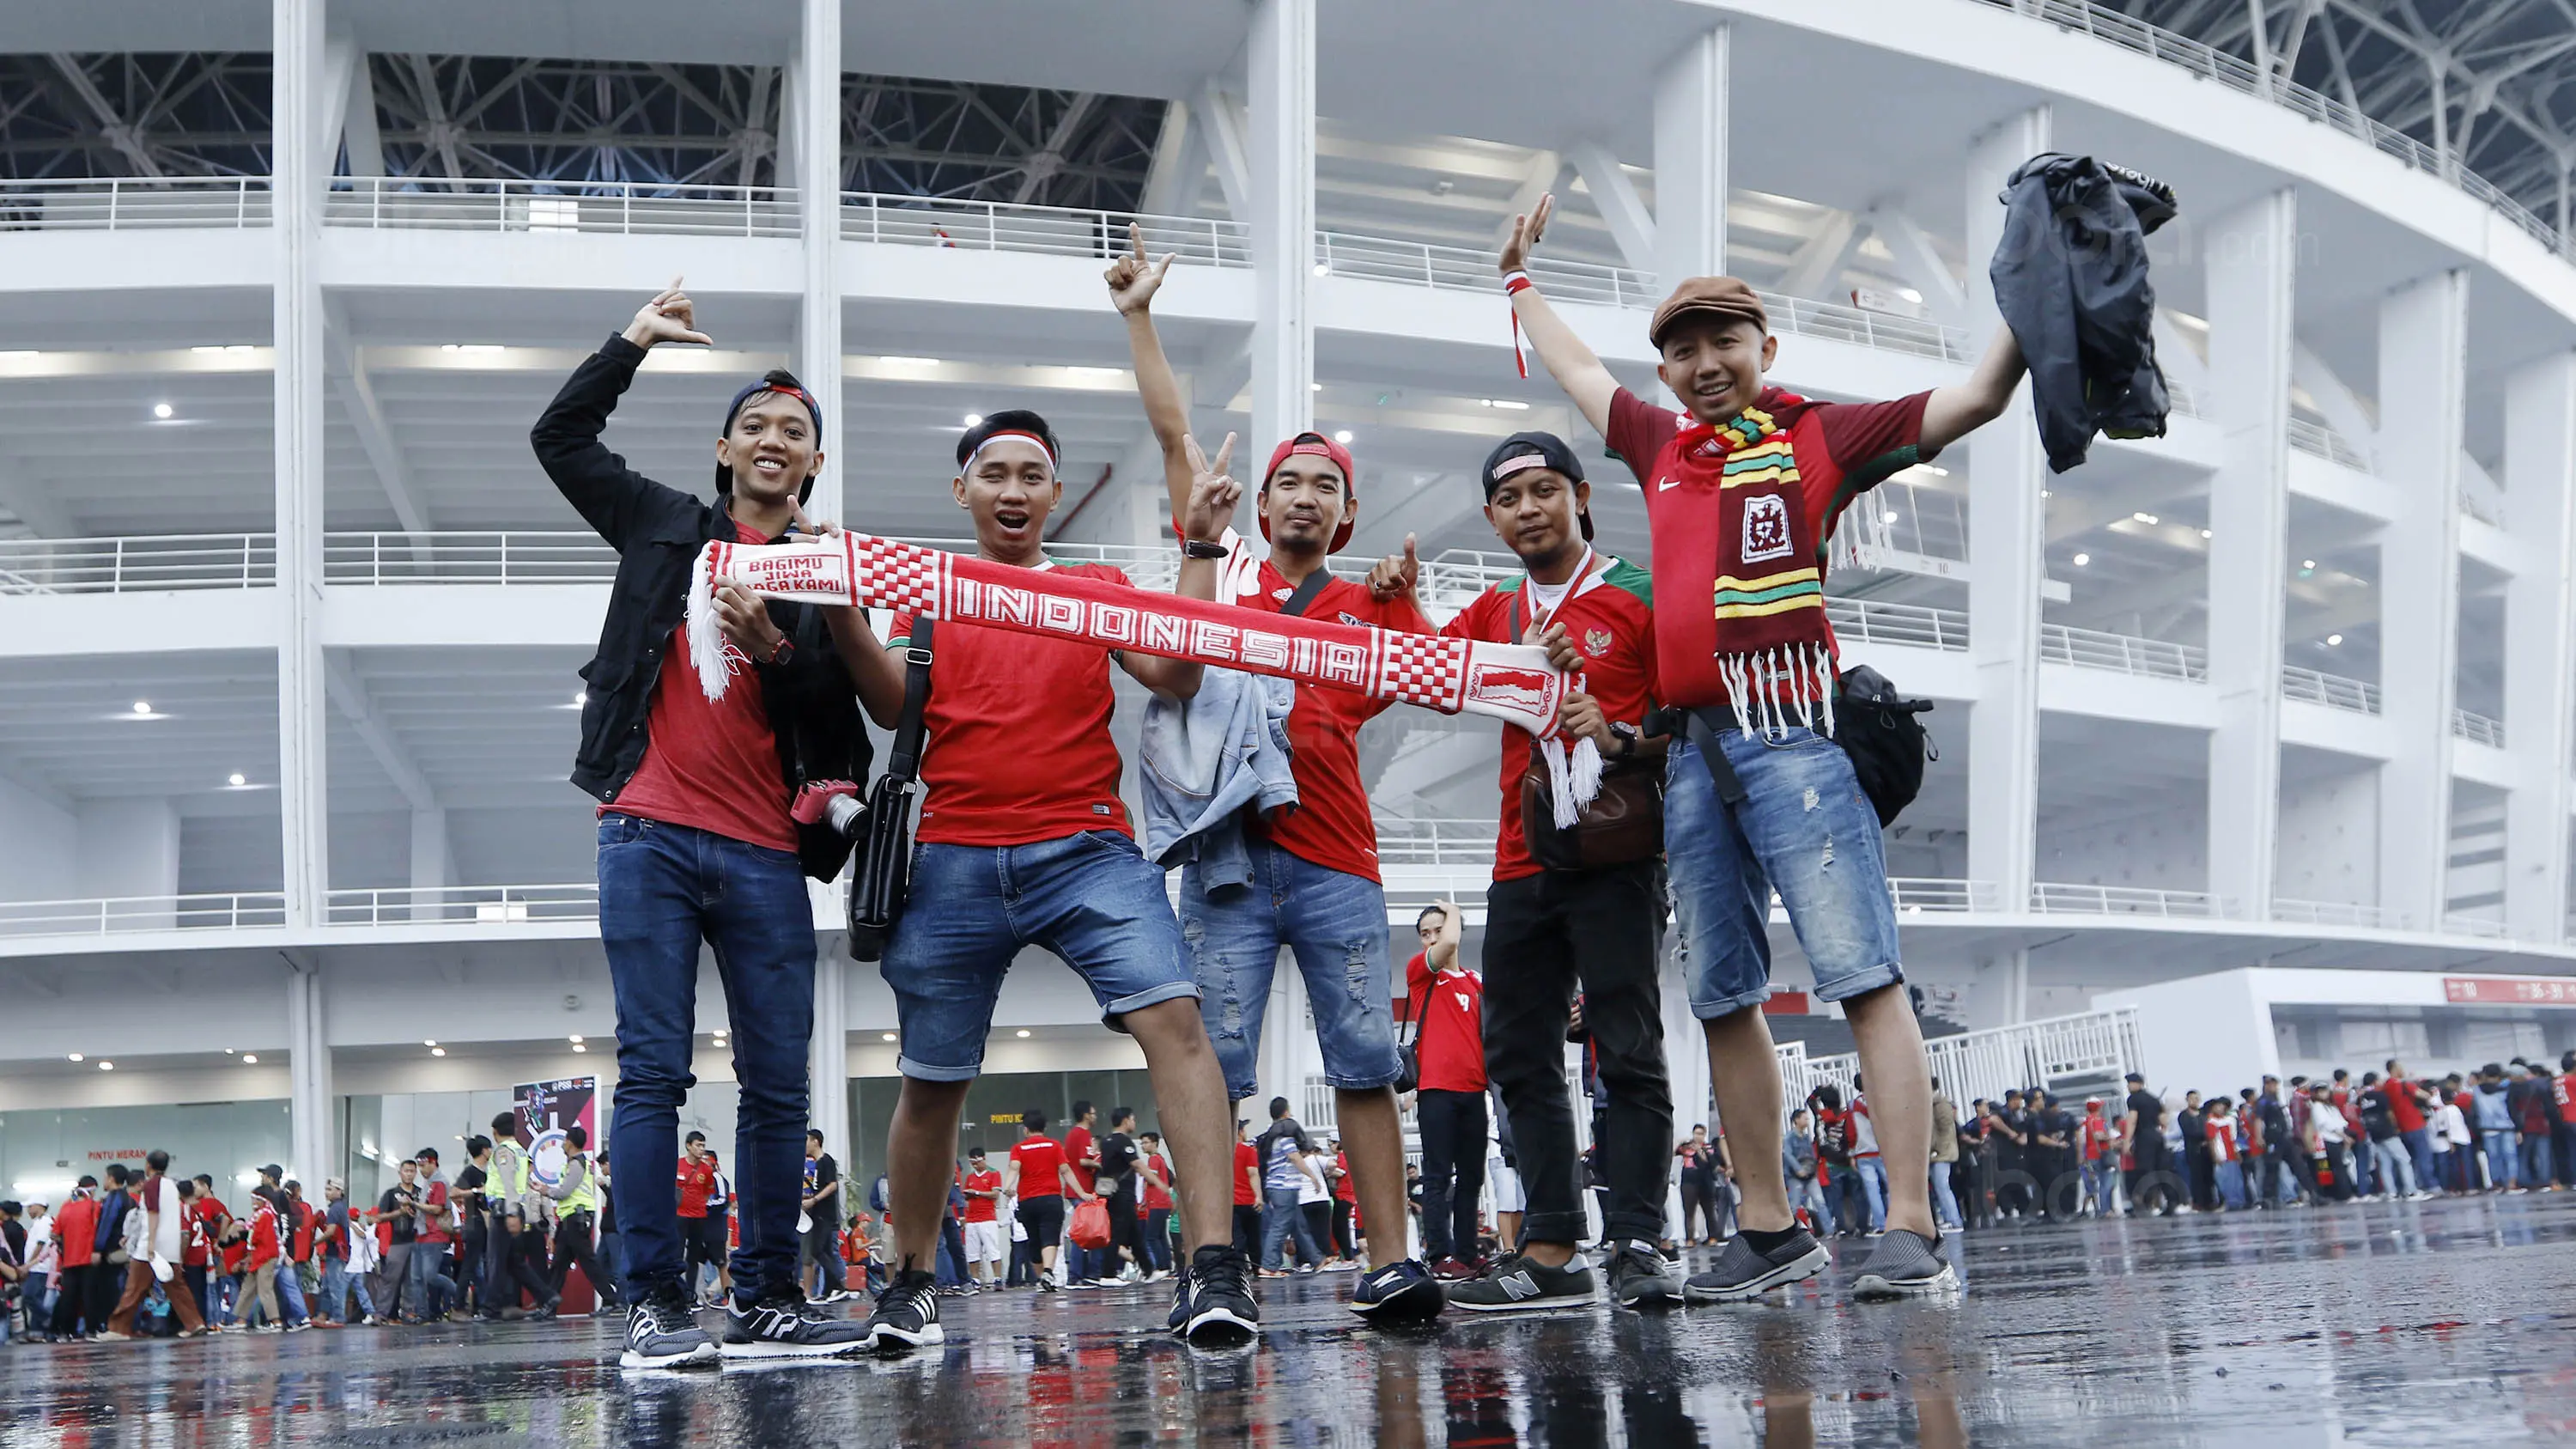 Suporter foto bersama sebelum memasuki Stadion Utama Gelora Bung Karno (SUGBK), Jakarta, Minggu (14/1/2018). Kehadiran mereka untuk menyaksikan langsung pertandingan antara Indonesia melawan Islandia dalam laga persahabatan. (Bola.com/M Iqbal Ichsan)